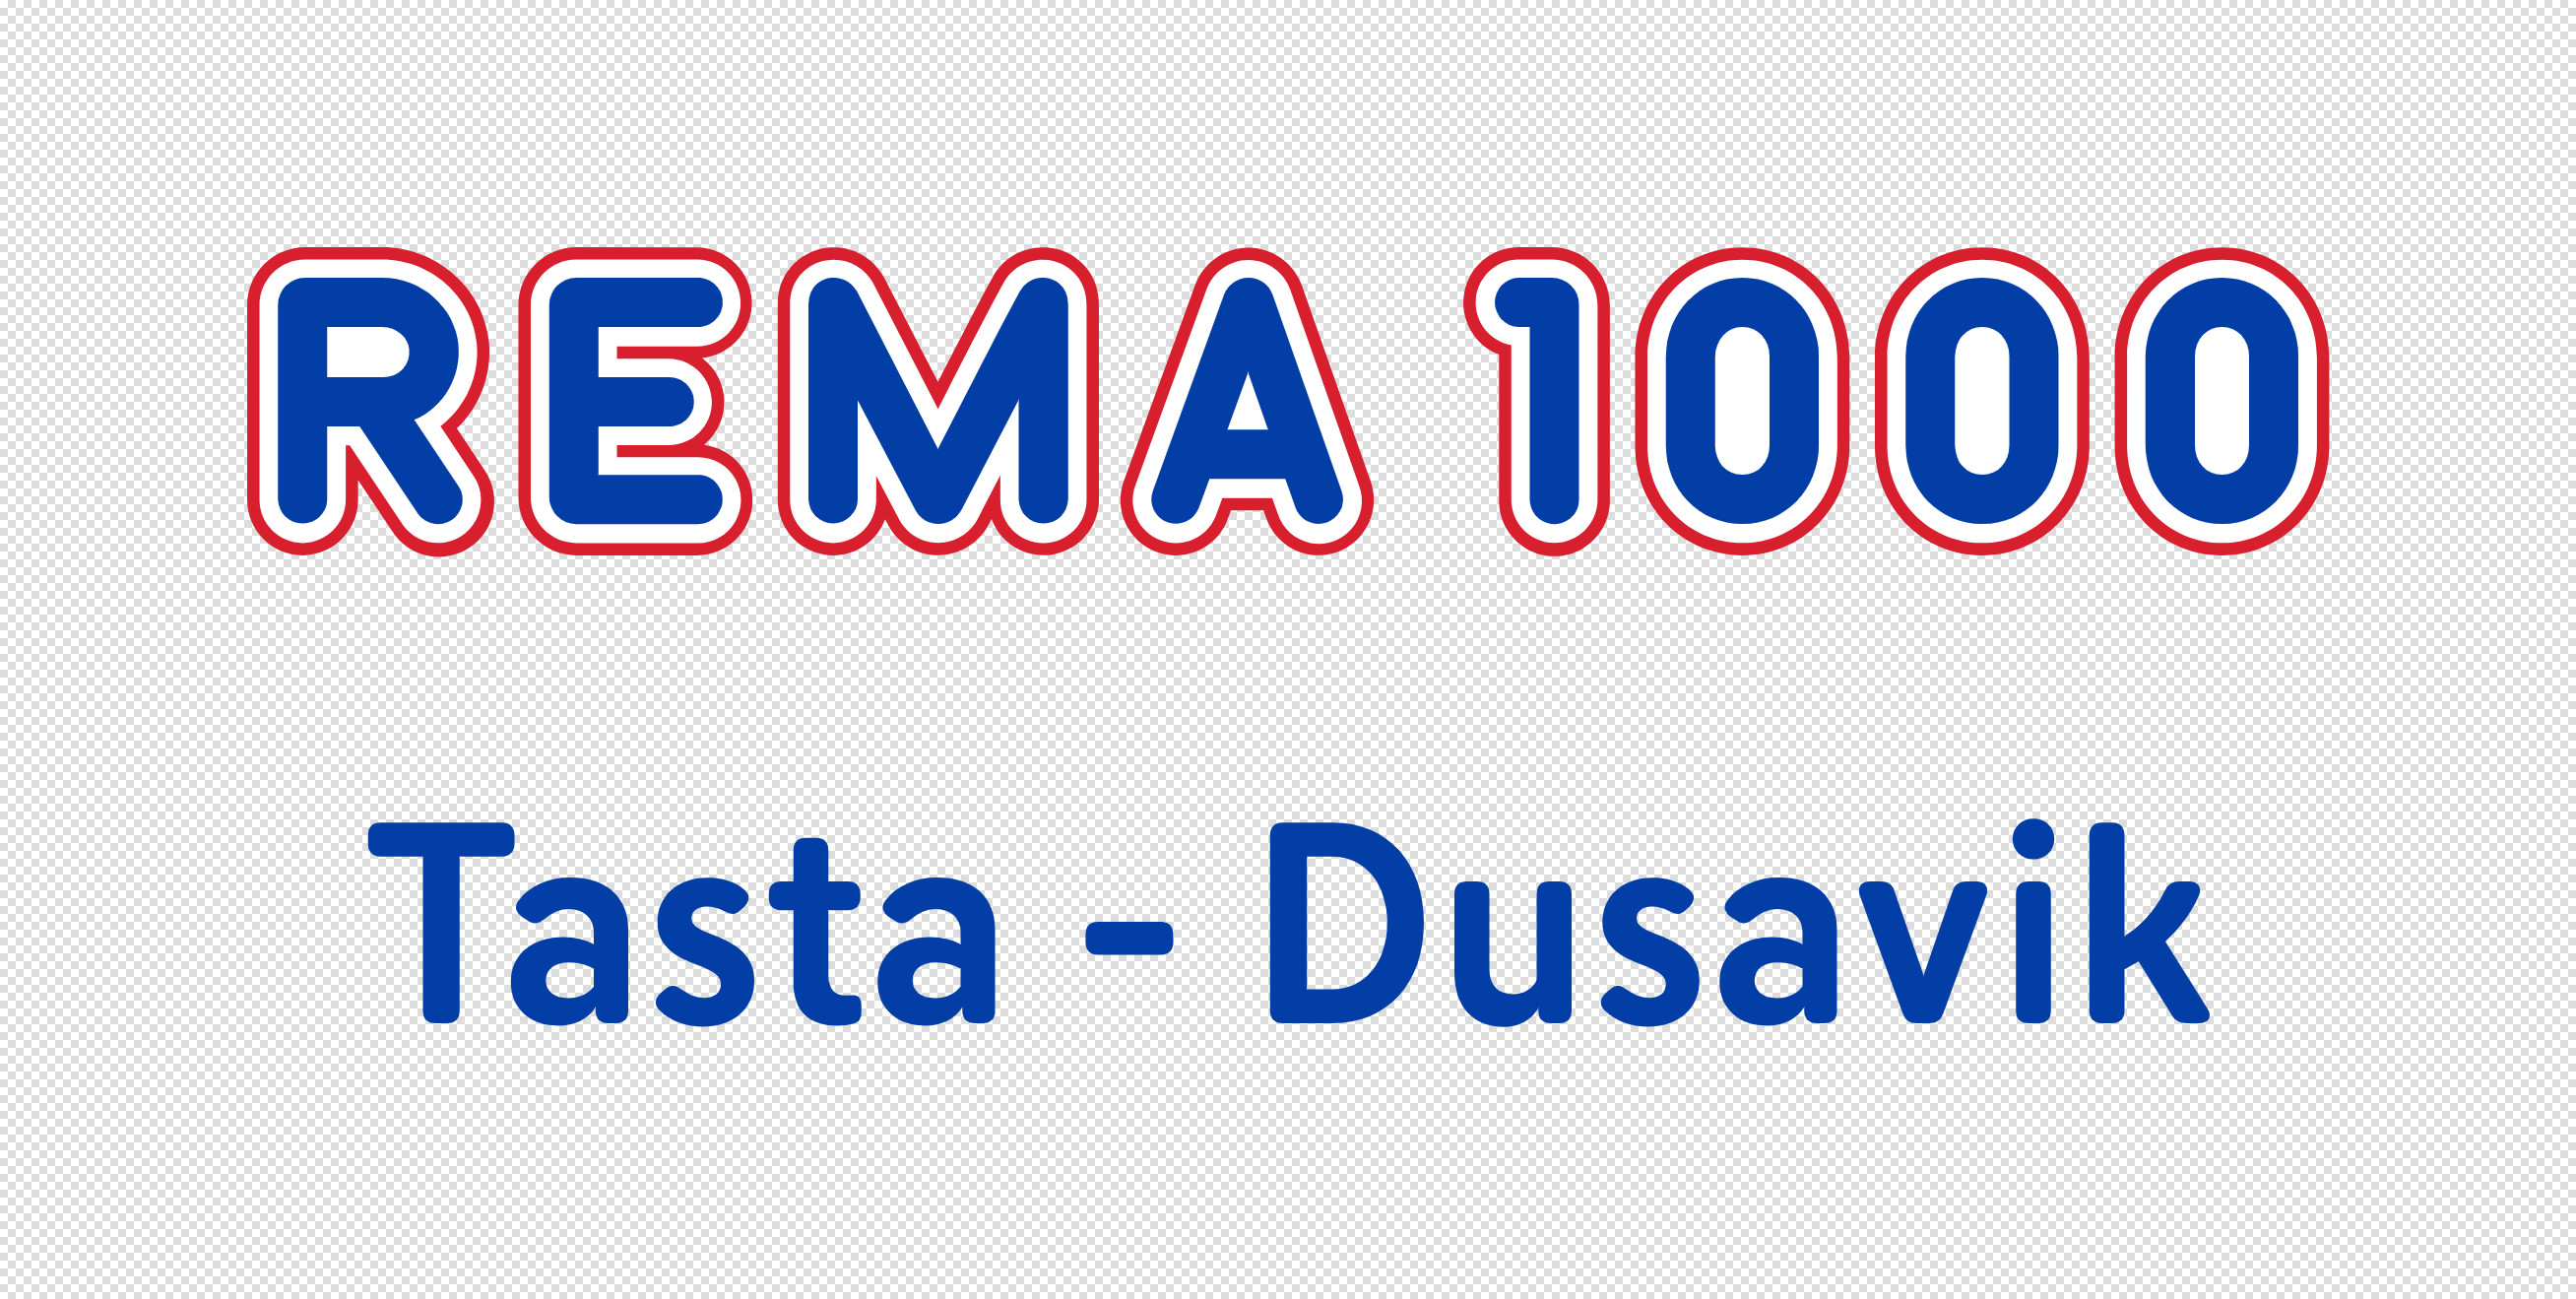 Rama 1000 Tasta